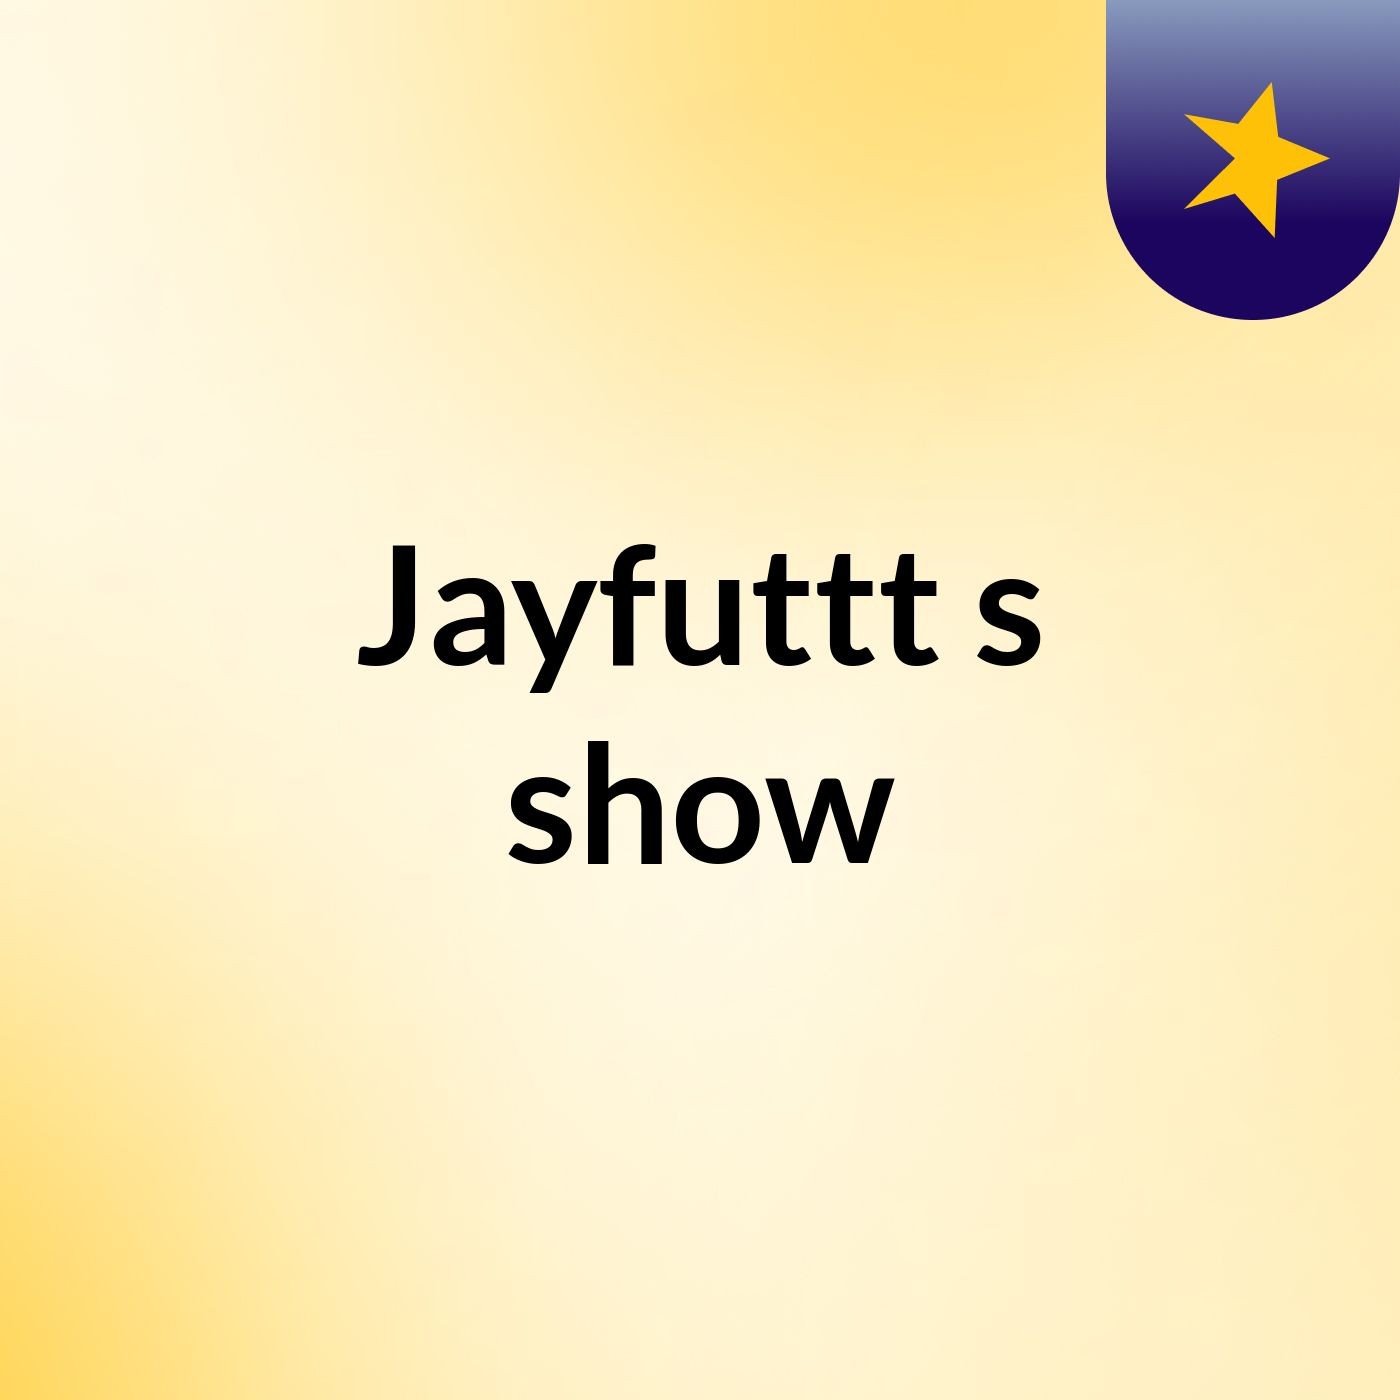 Jayfuttt's show